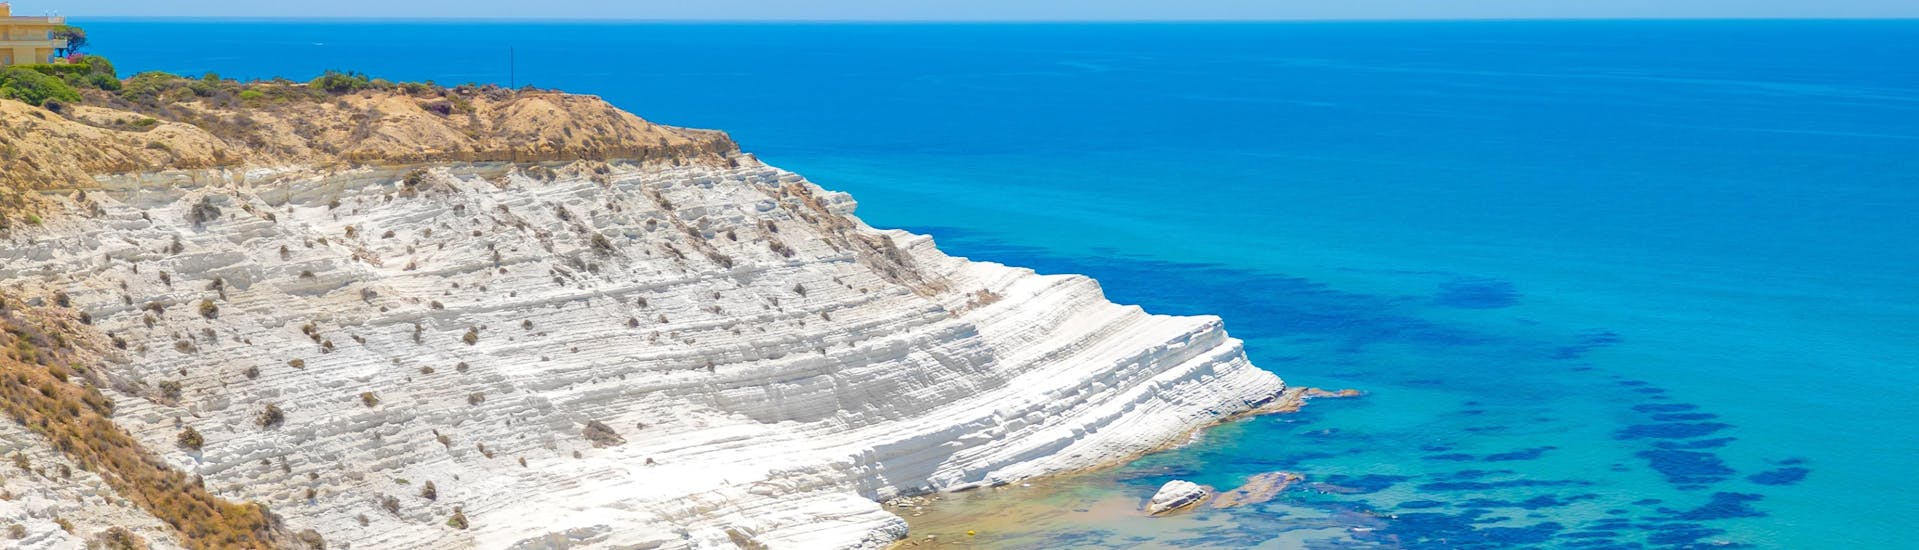 Una delle spiagge più belle e famose di Agrigento, in Sicilia.